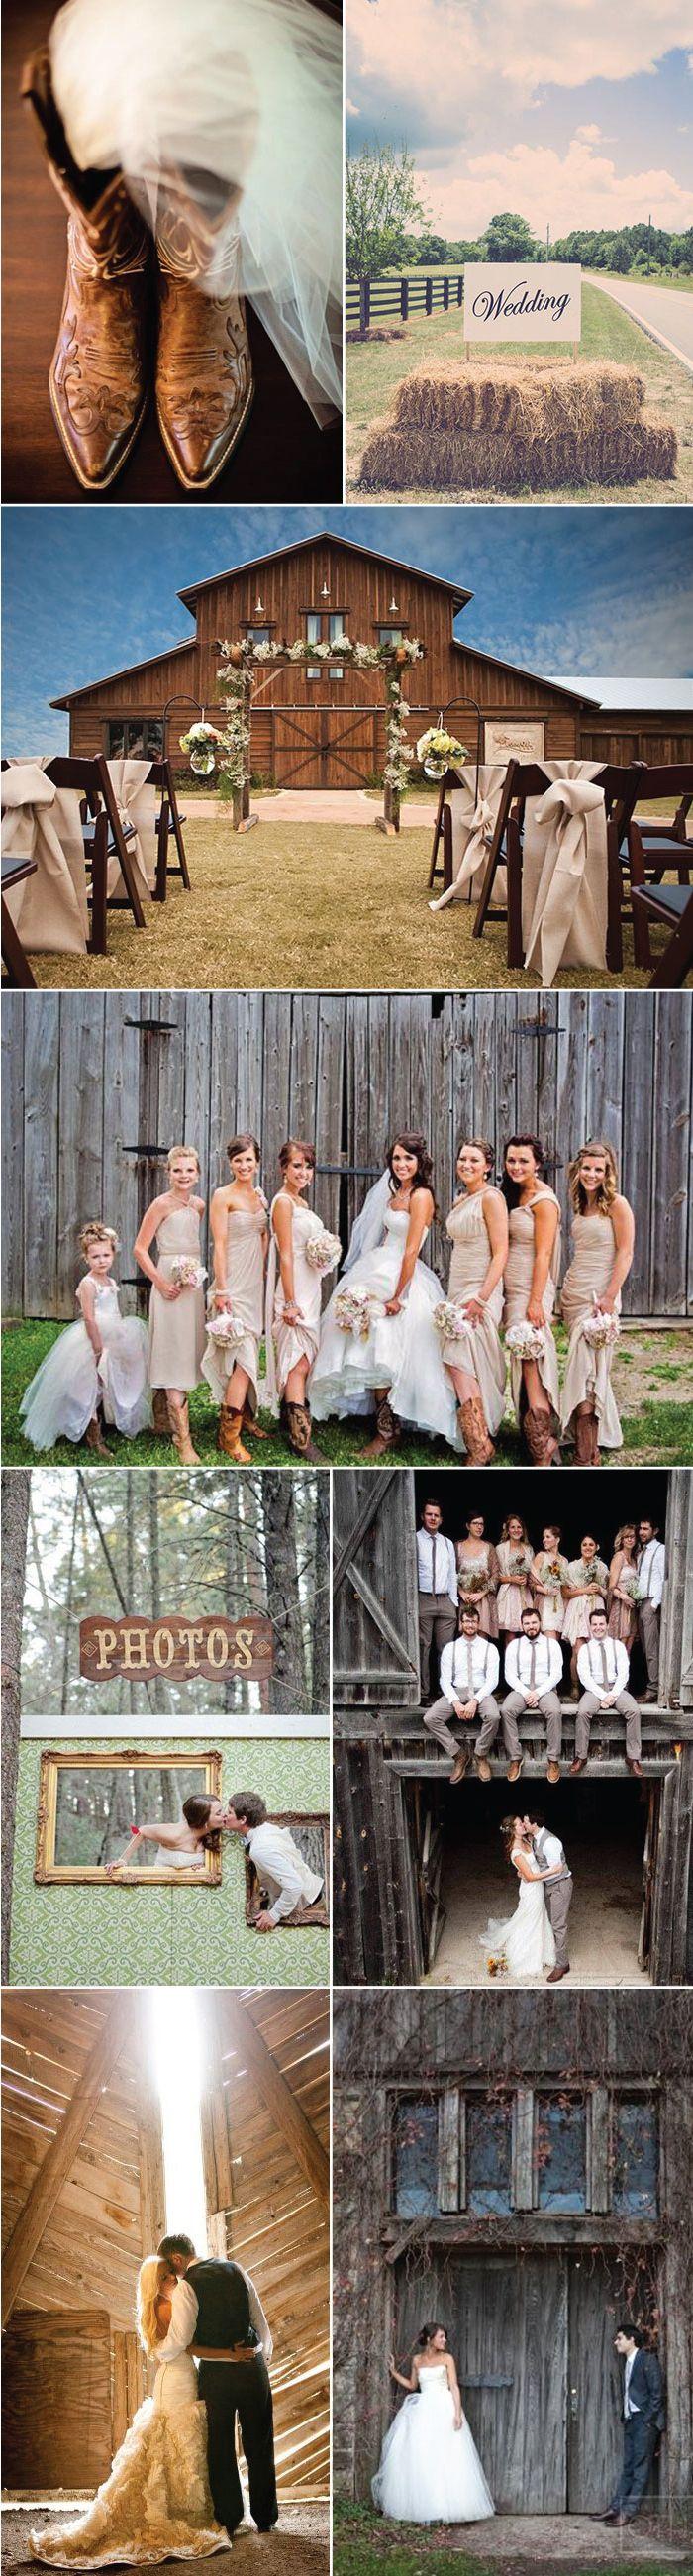 Wedding - Wedding Ideas For Barn Weddings   